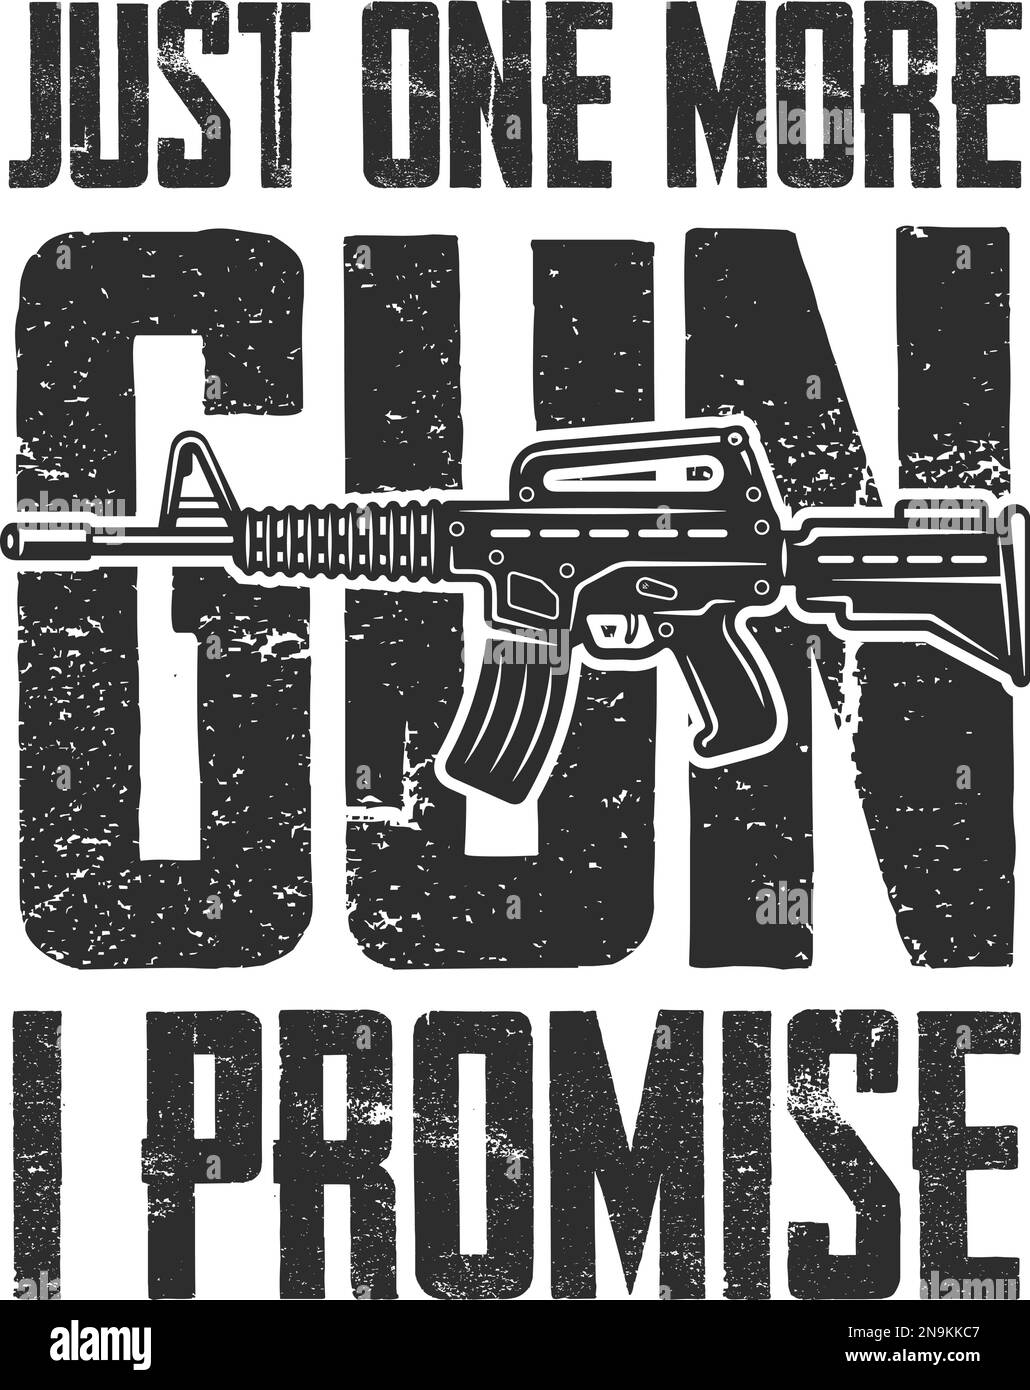 Grunge-Vintage-Typografie-Poster mit Sturmgewehr und Text. Nur noch eine Waffe, versprochen. Zitat Für Waffenliebhaber. Stock Vektor